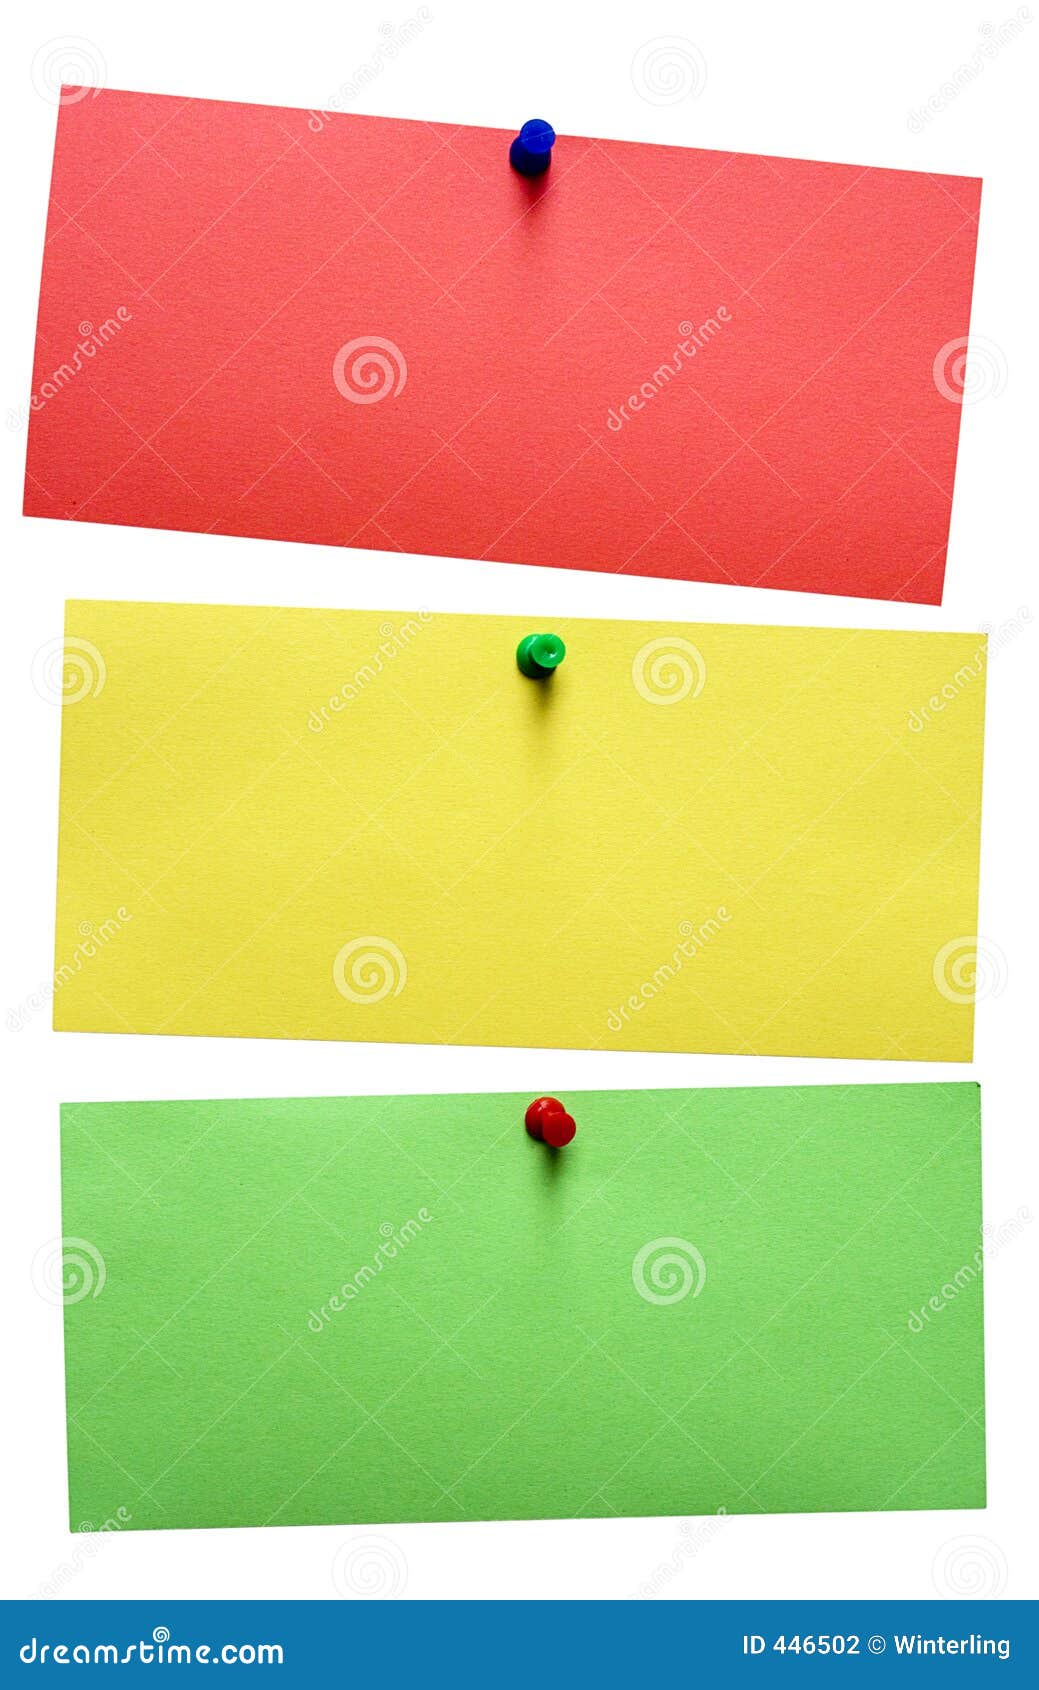 Notas del semáforo con el camino. Una nota roja, amarilla y verde aislada pined en un fondo blanco. El fichero contiene el camino de recortes.